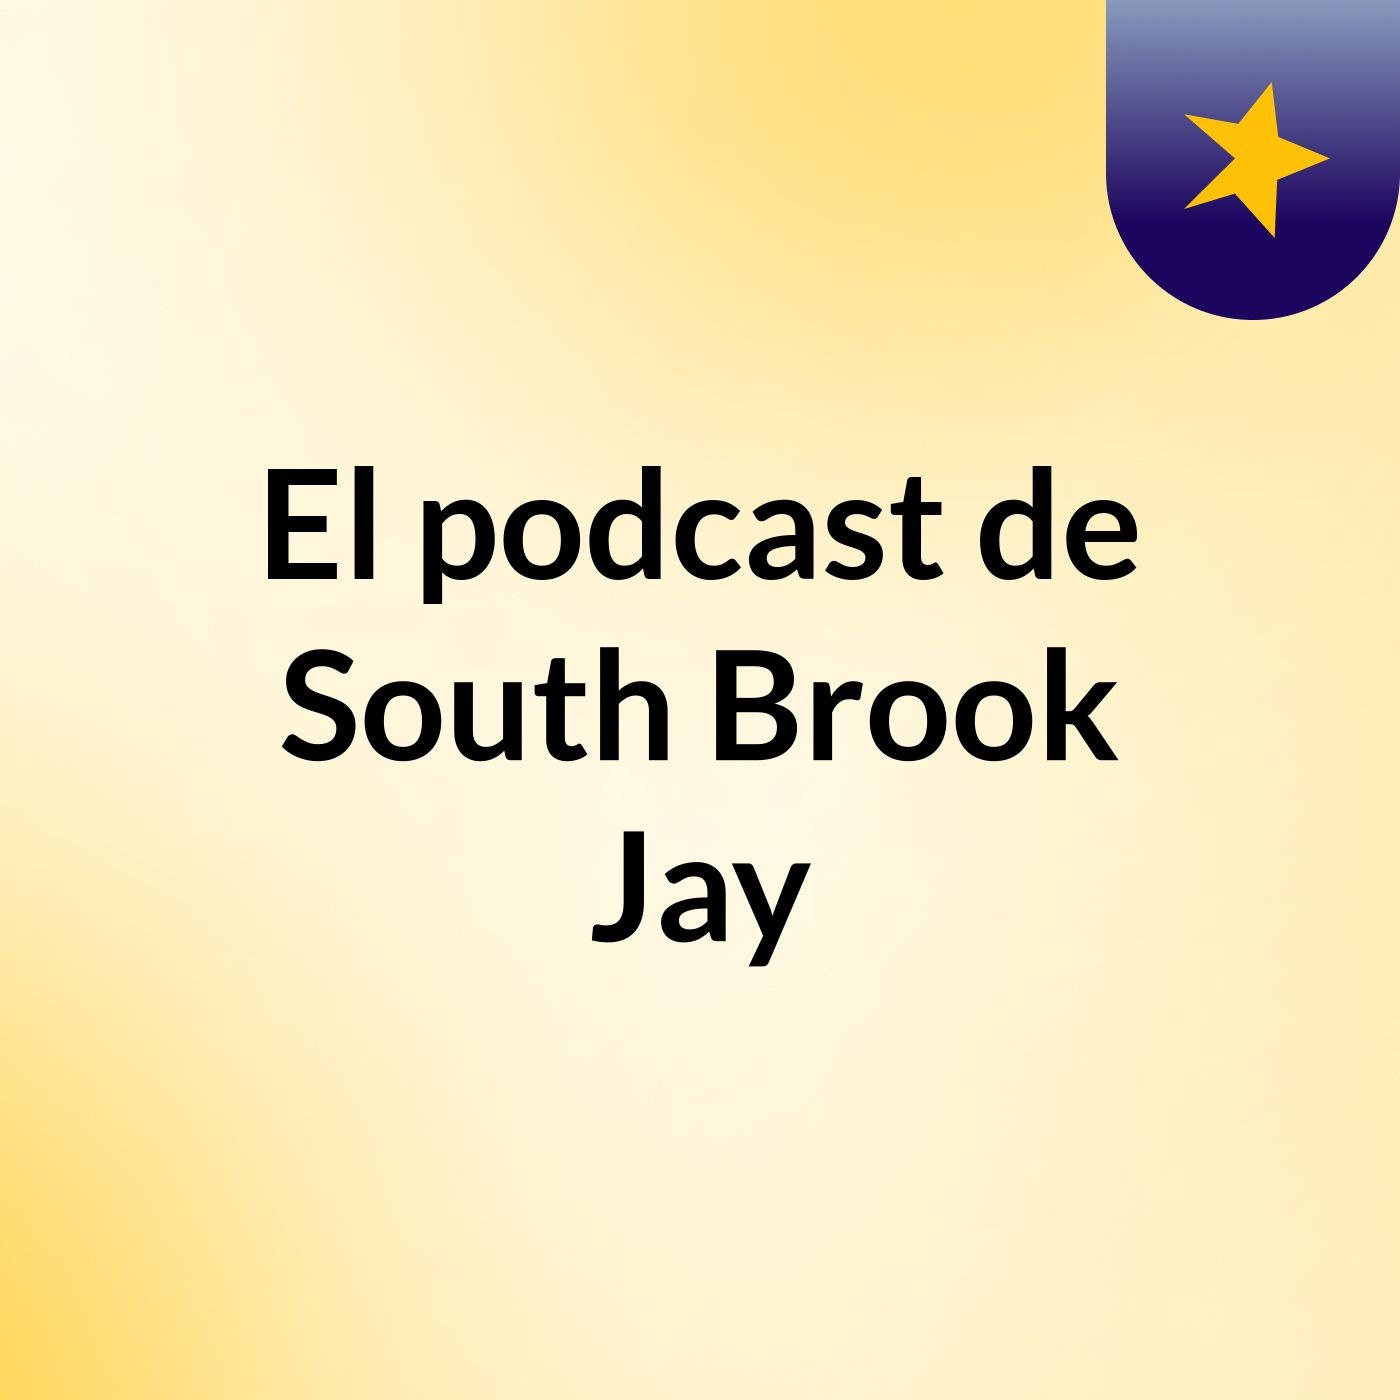 El podcast de South Brook Jay